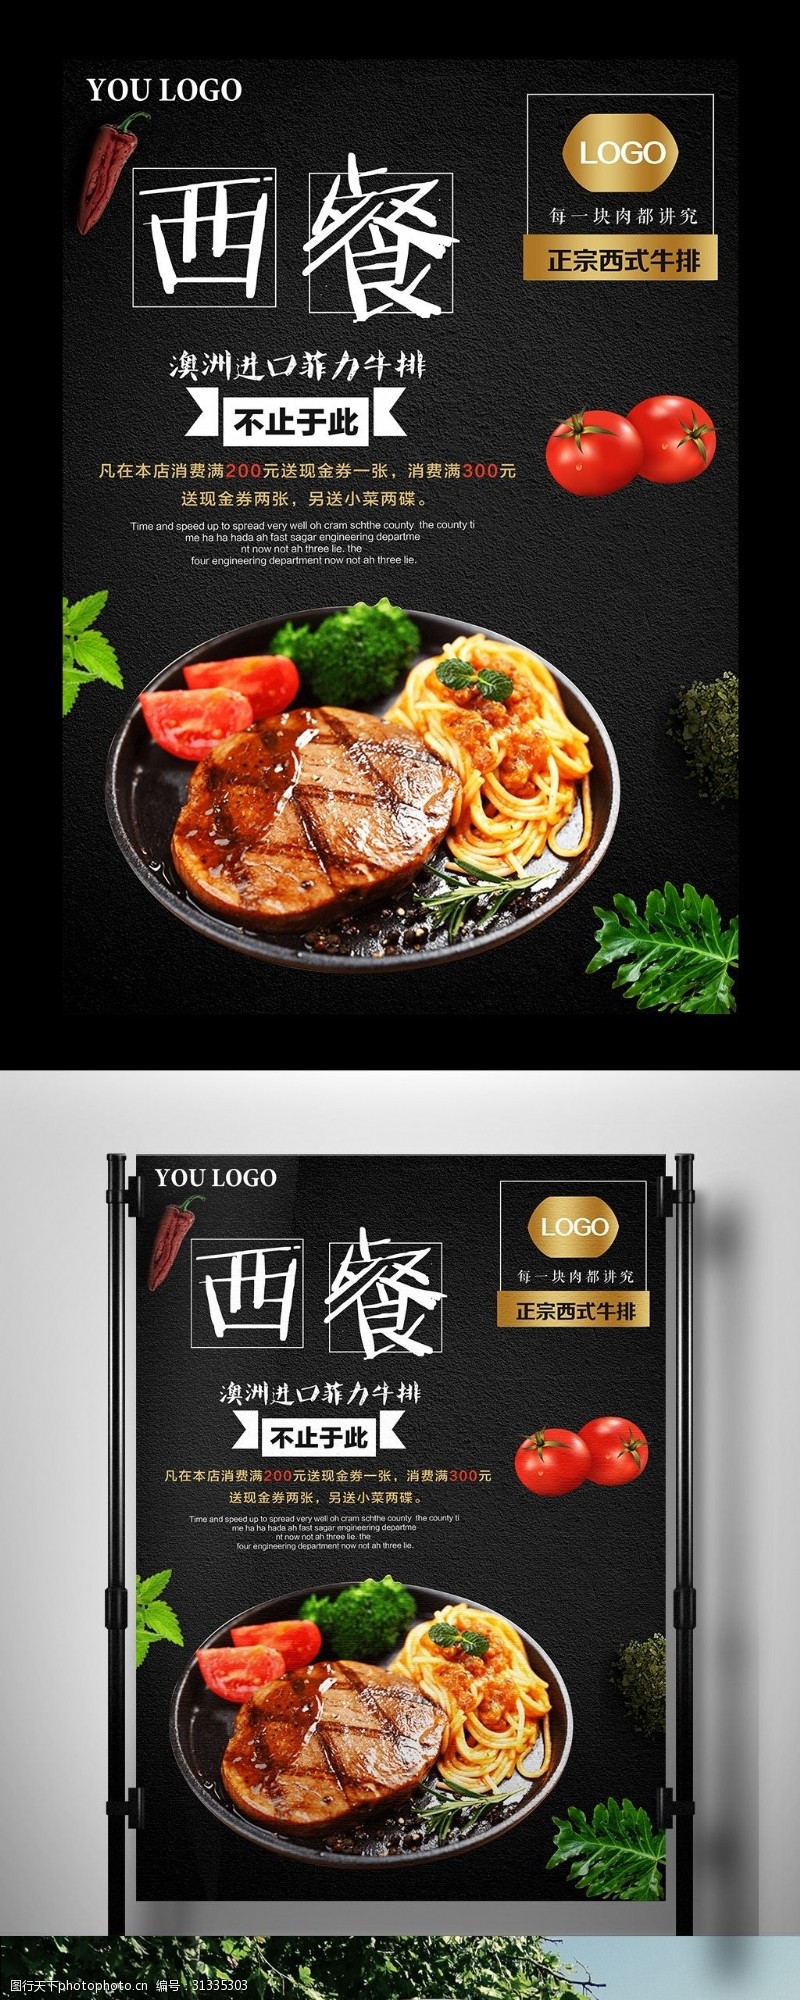 新张力黑色背景经典美食西餐宣传海报